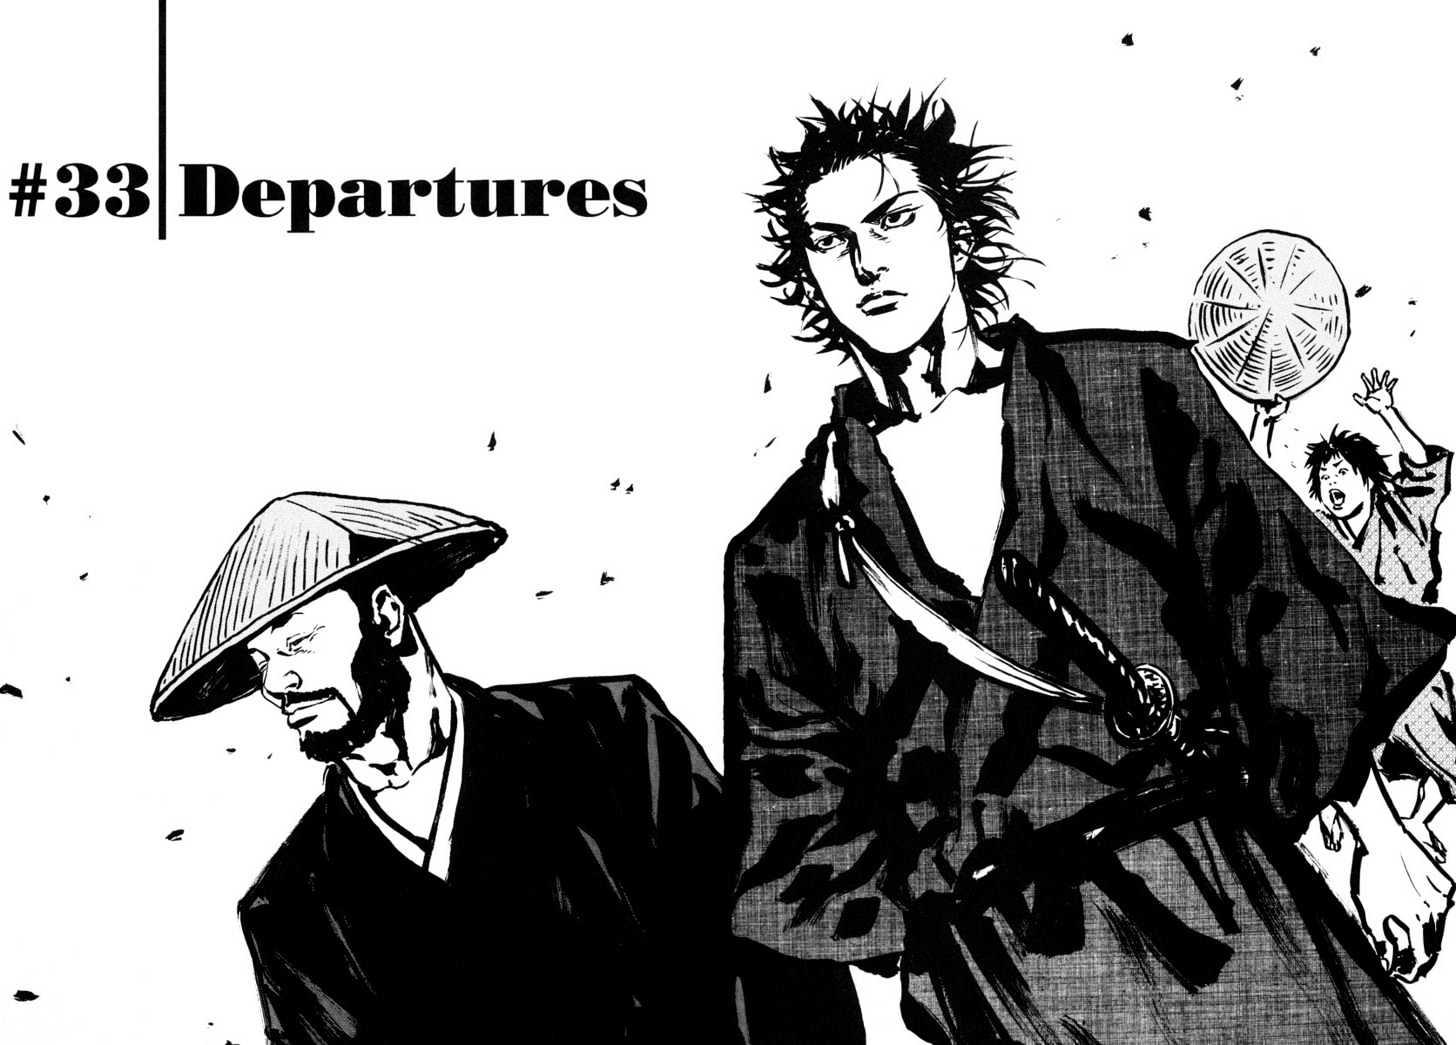 Vagabond Vol.4 Chapter 33 : Departures page 4 - Mangakakalot